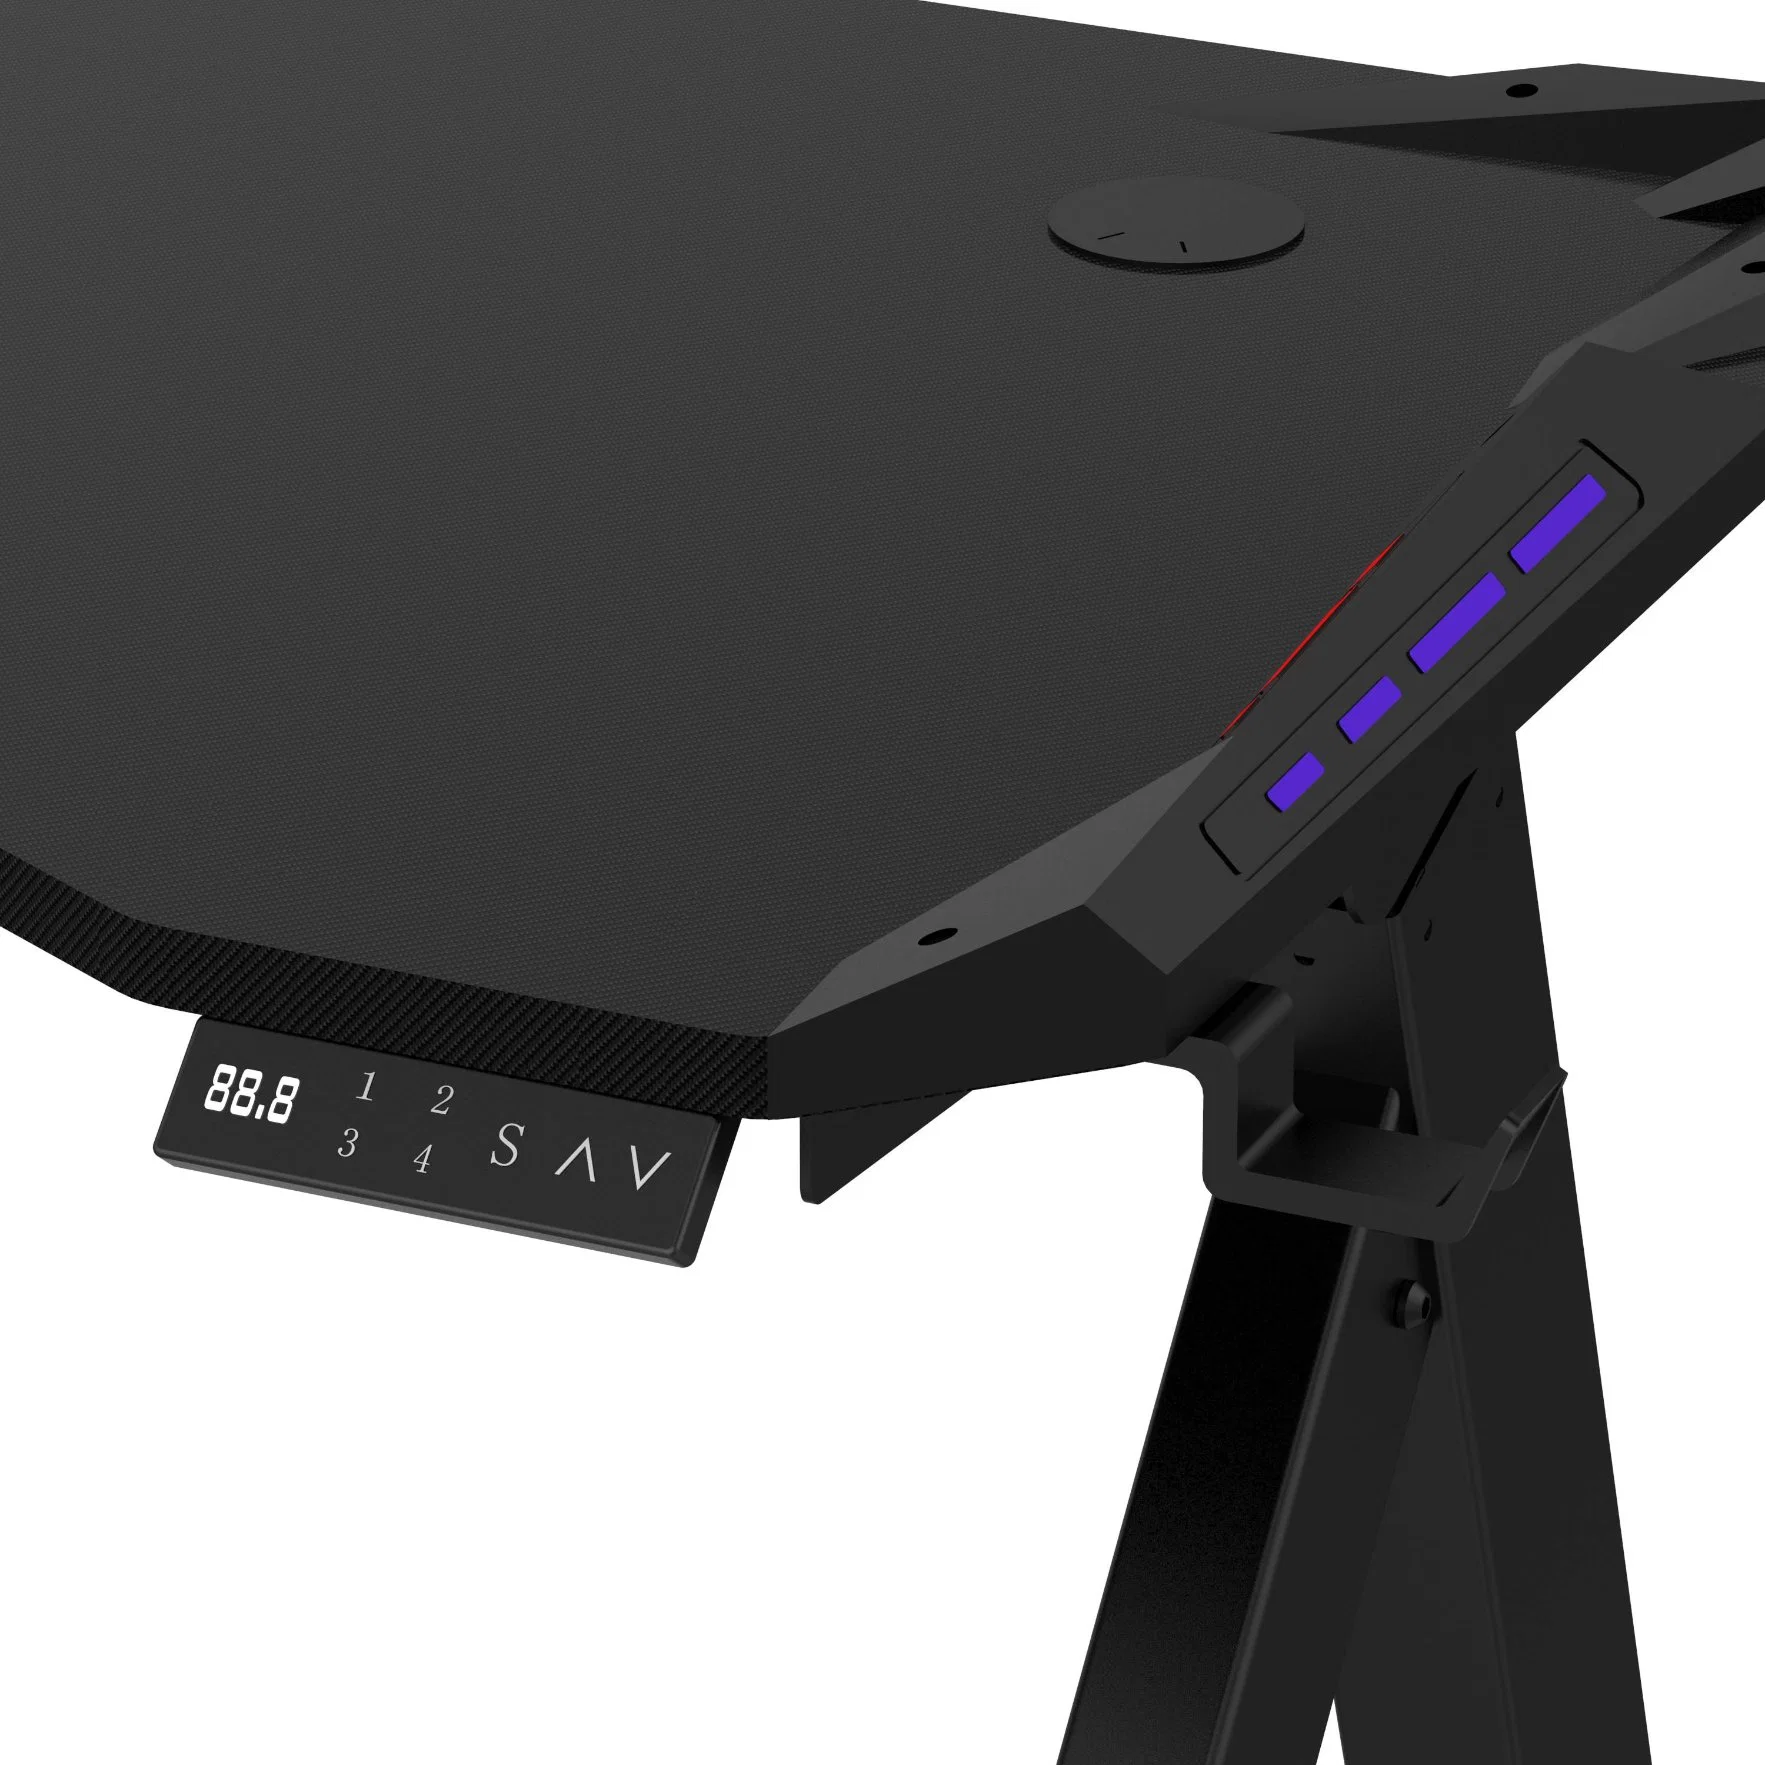 Elevadores modernos tabela permanente de altura ajustável para melhor imagem Big Black RGB de mesa de jogos e desportos de mesa com tampo da mesa